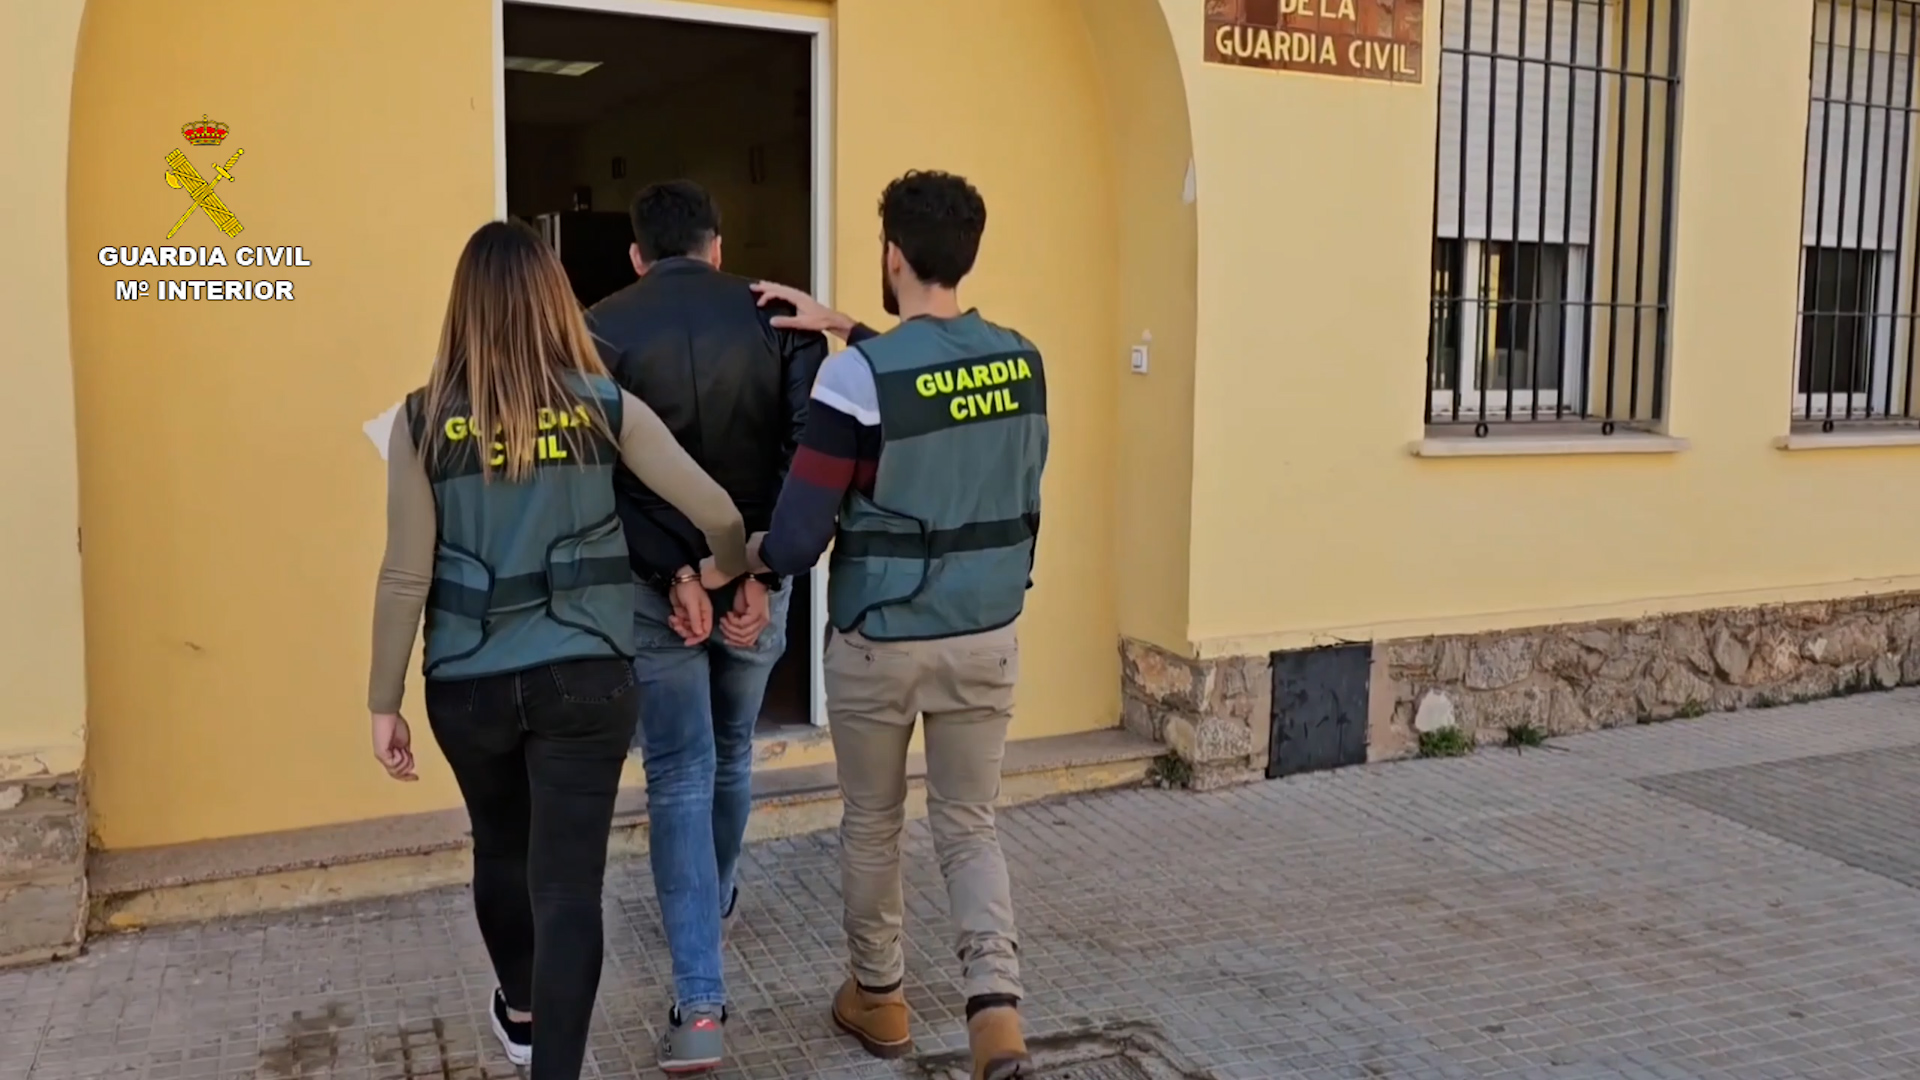 La Guardia Civil detiene al creador de contenido en redes sociales que vejaba a personas vulnerables